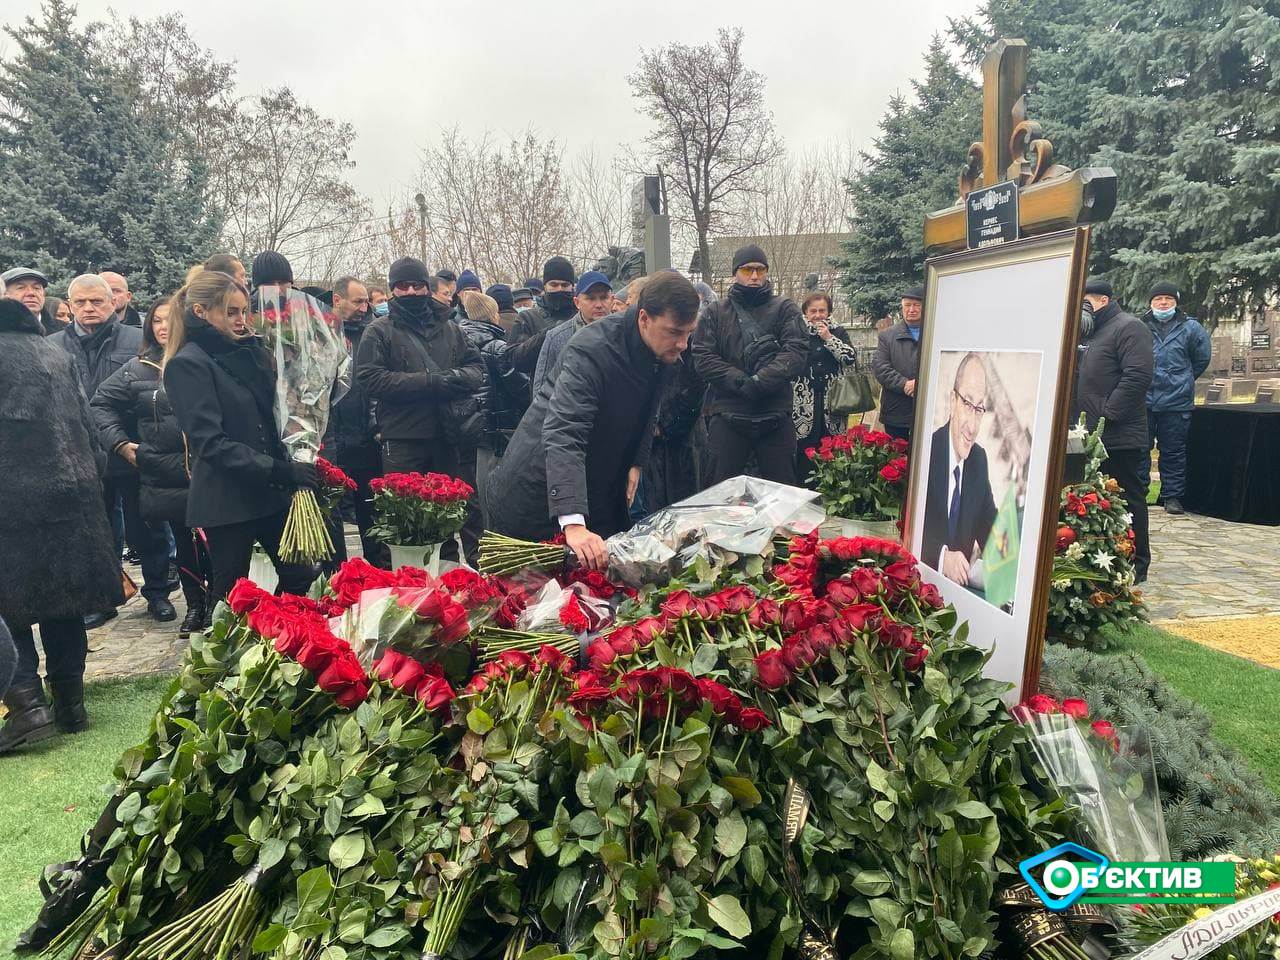 В Харькове состоялась панихида в годовщину смерти экс-мэра Геннадия Кернеса (фото)